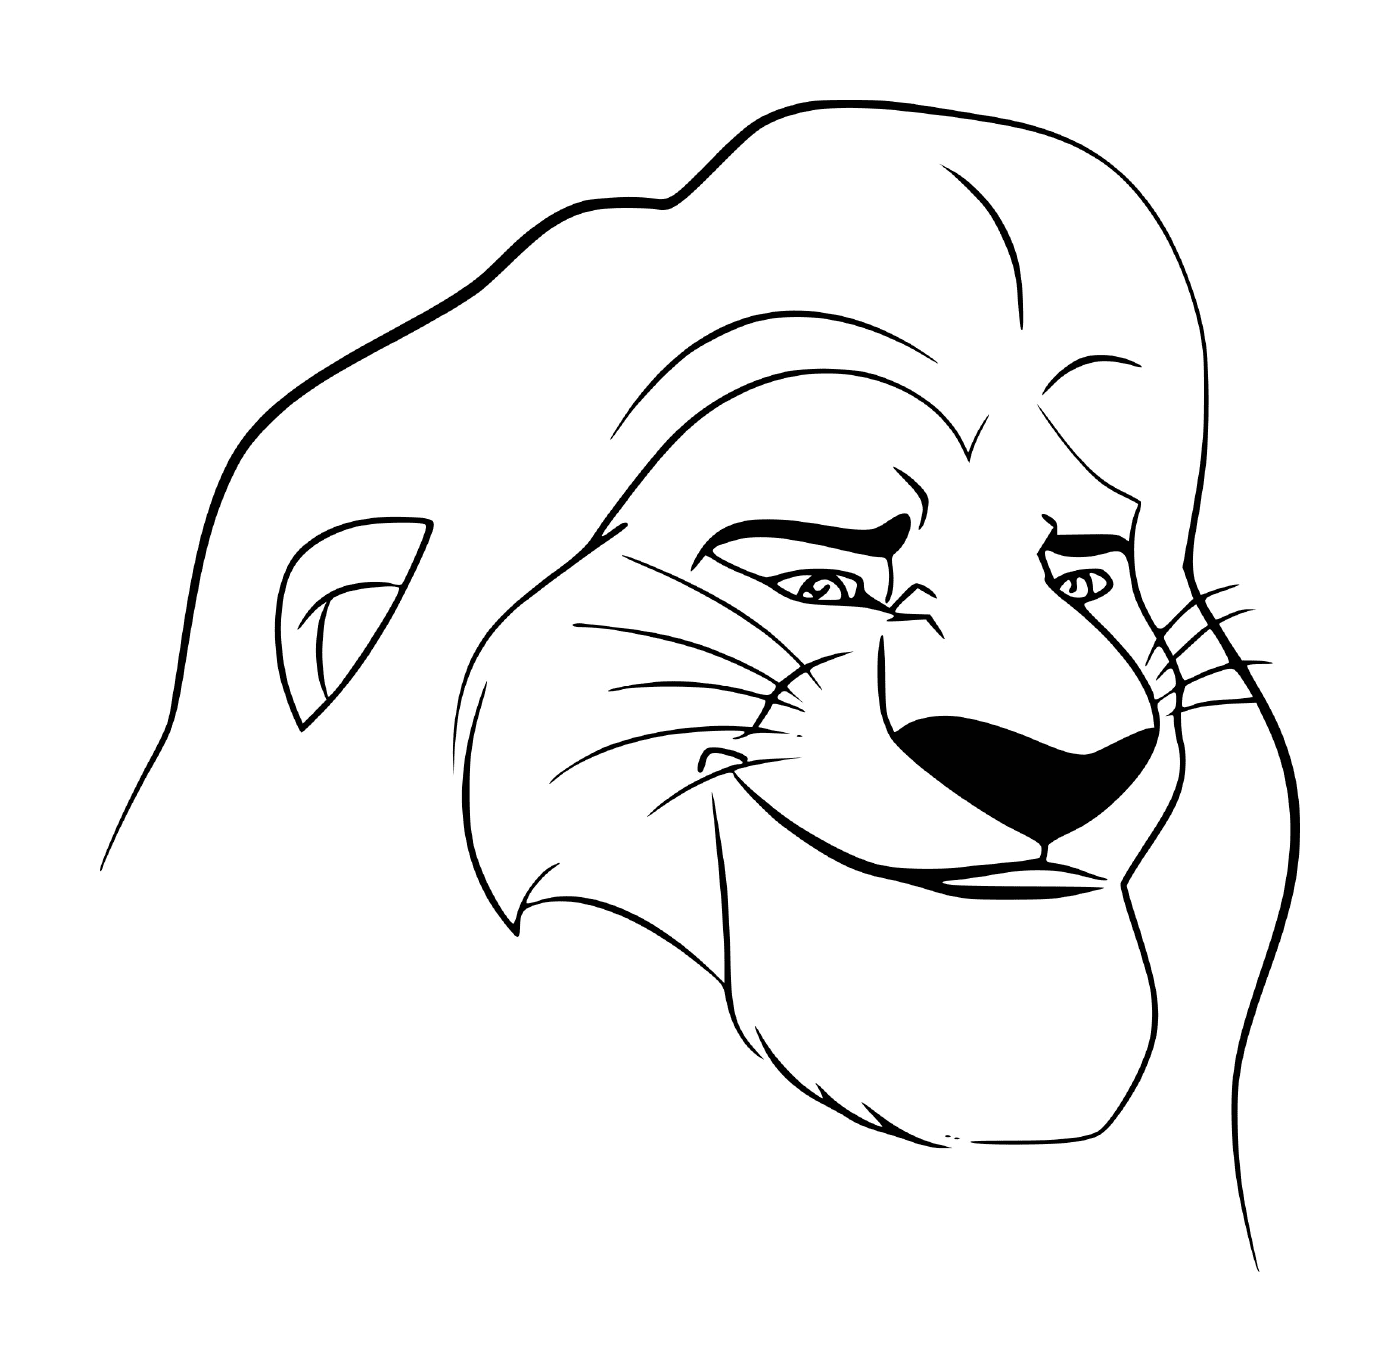  Cara de Mufasa, personaje del Rey León 